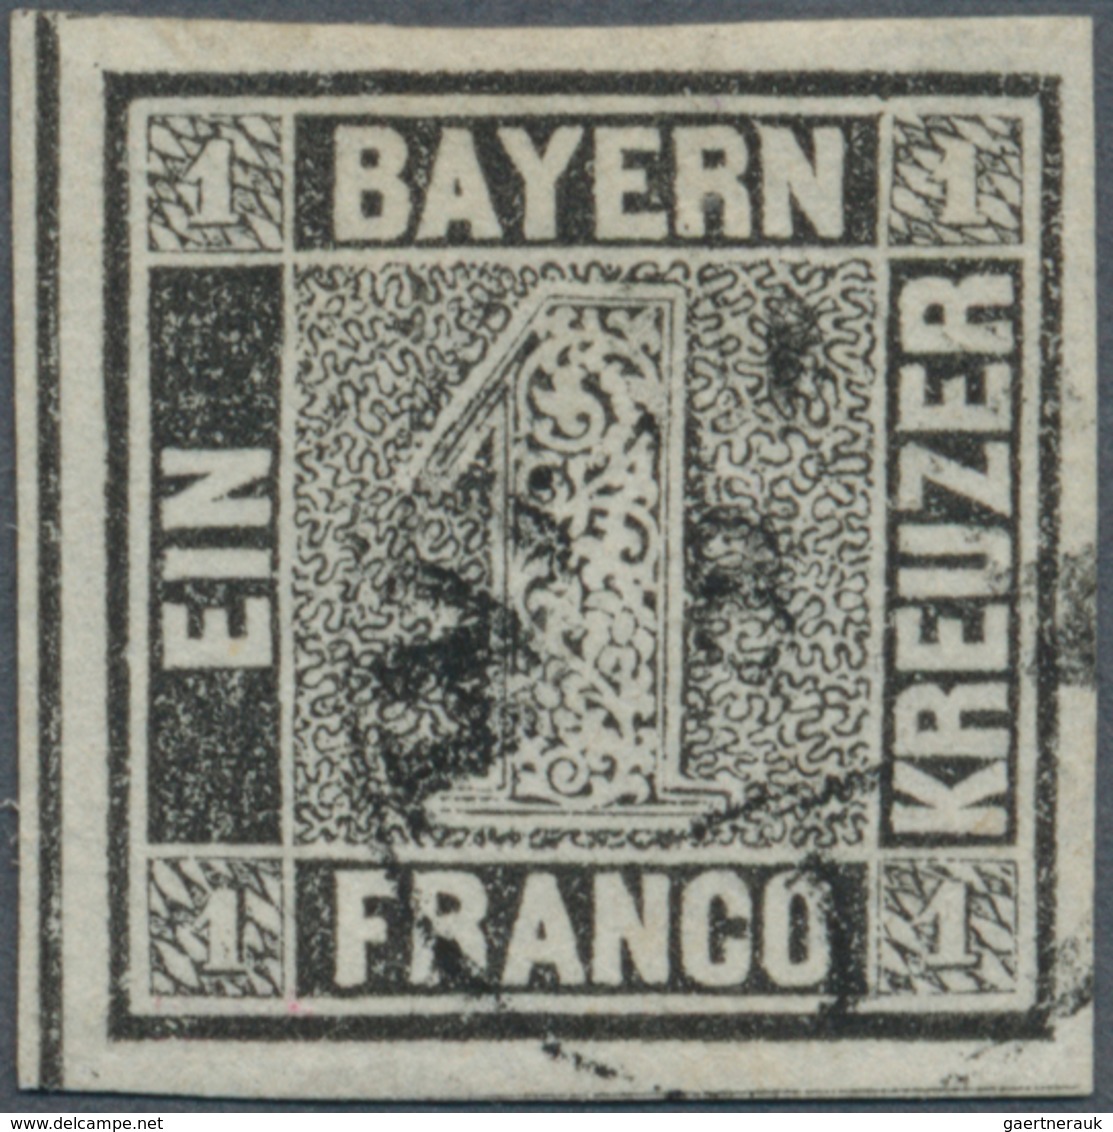 01152 Bayern - Marken Und Briefe: 1849, Schwarzer Einser 1 Kr. Schwarz, Platte 1 Mit Zartem Seltenem Finge - Otros & Sin Clasificación